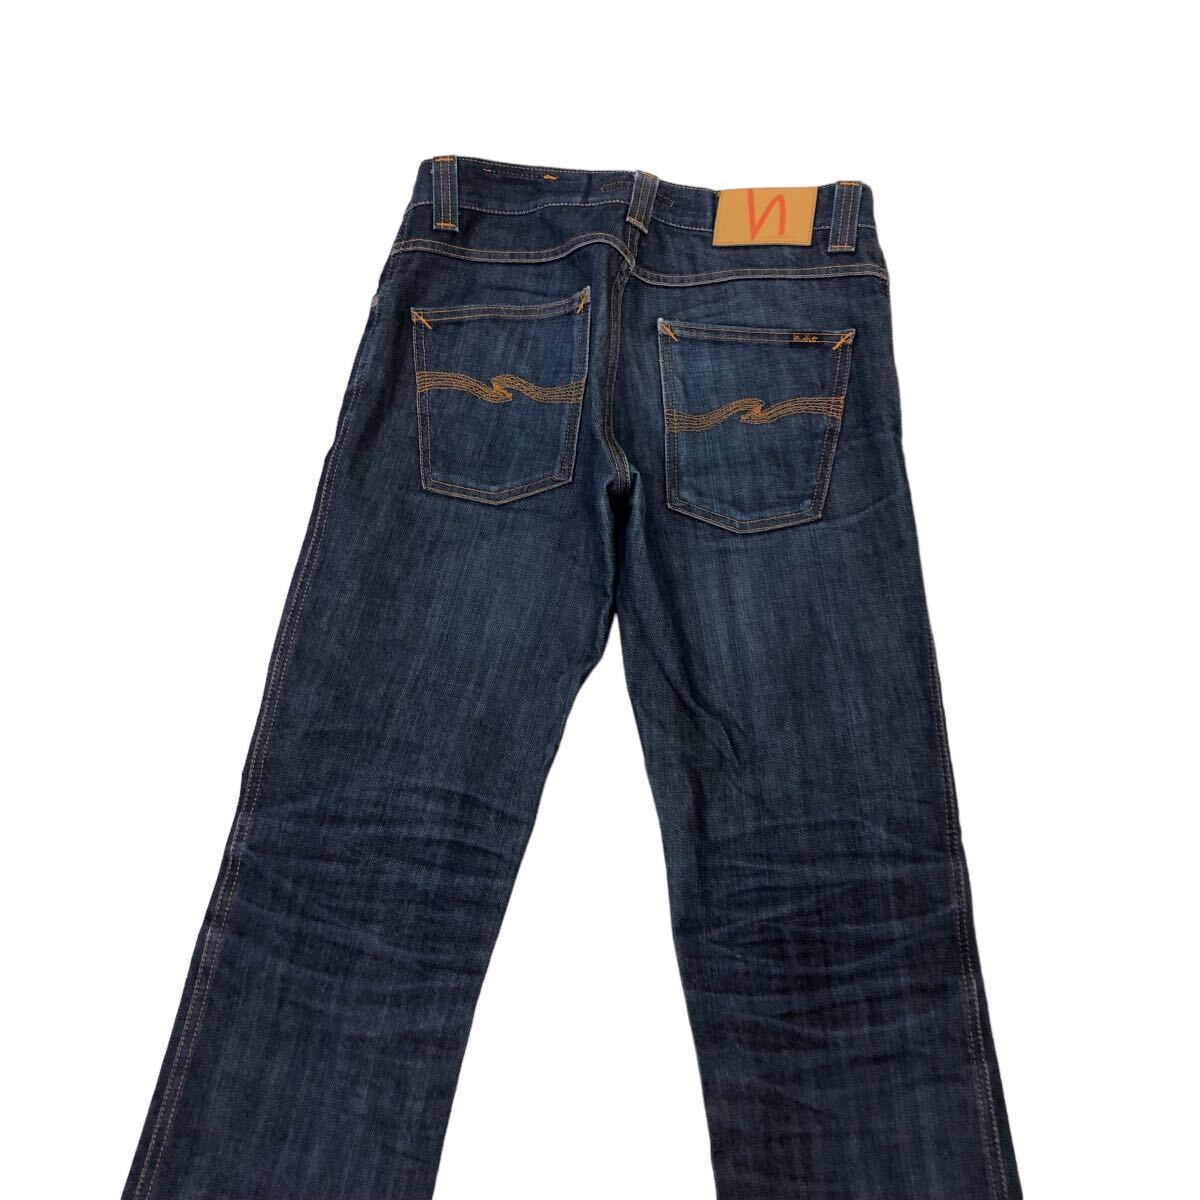 H716 Nudie Jeans ヌーディージーンズ NJ1461 DRY デニム パンツ Gパン ジーンズ ネイビー系 ブルー系 綿100% メンズ 30_画像5